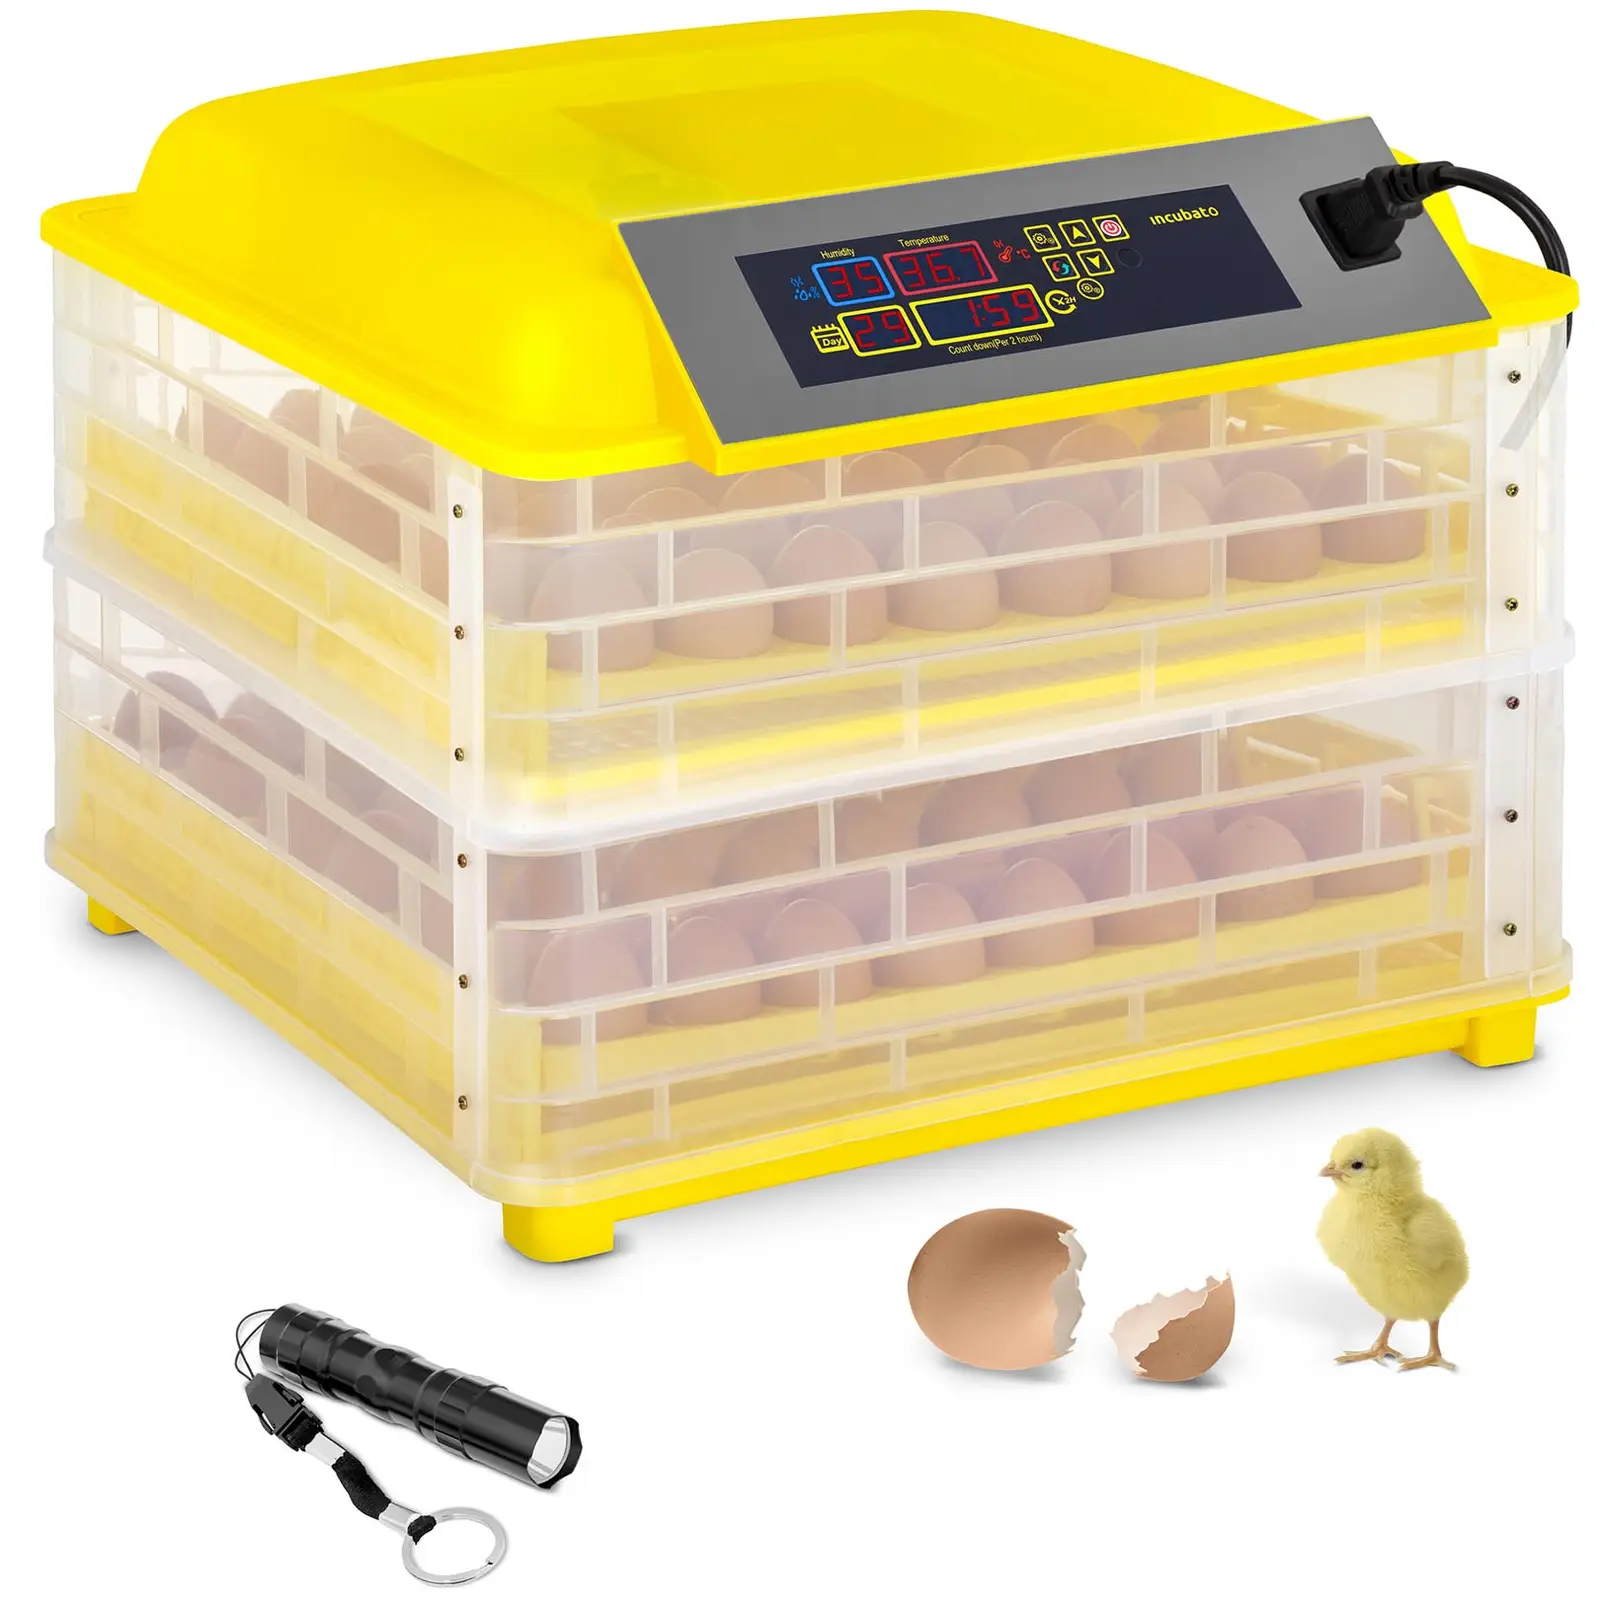 Incubatrice per uova professionale - 112 uova - Lampada sperauova integrata - Completamente automatica